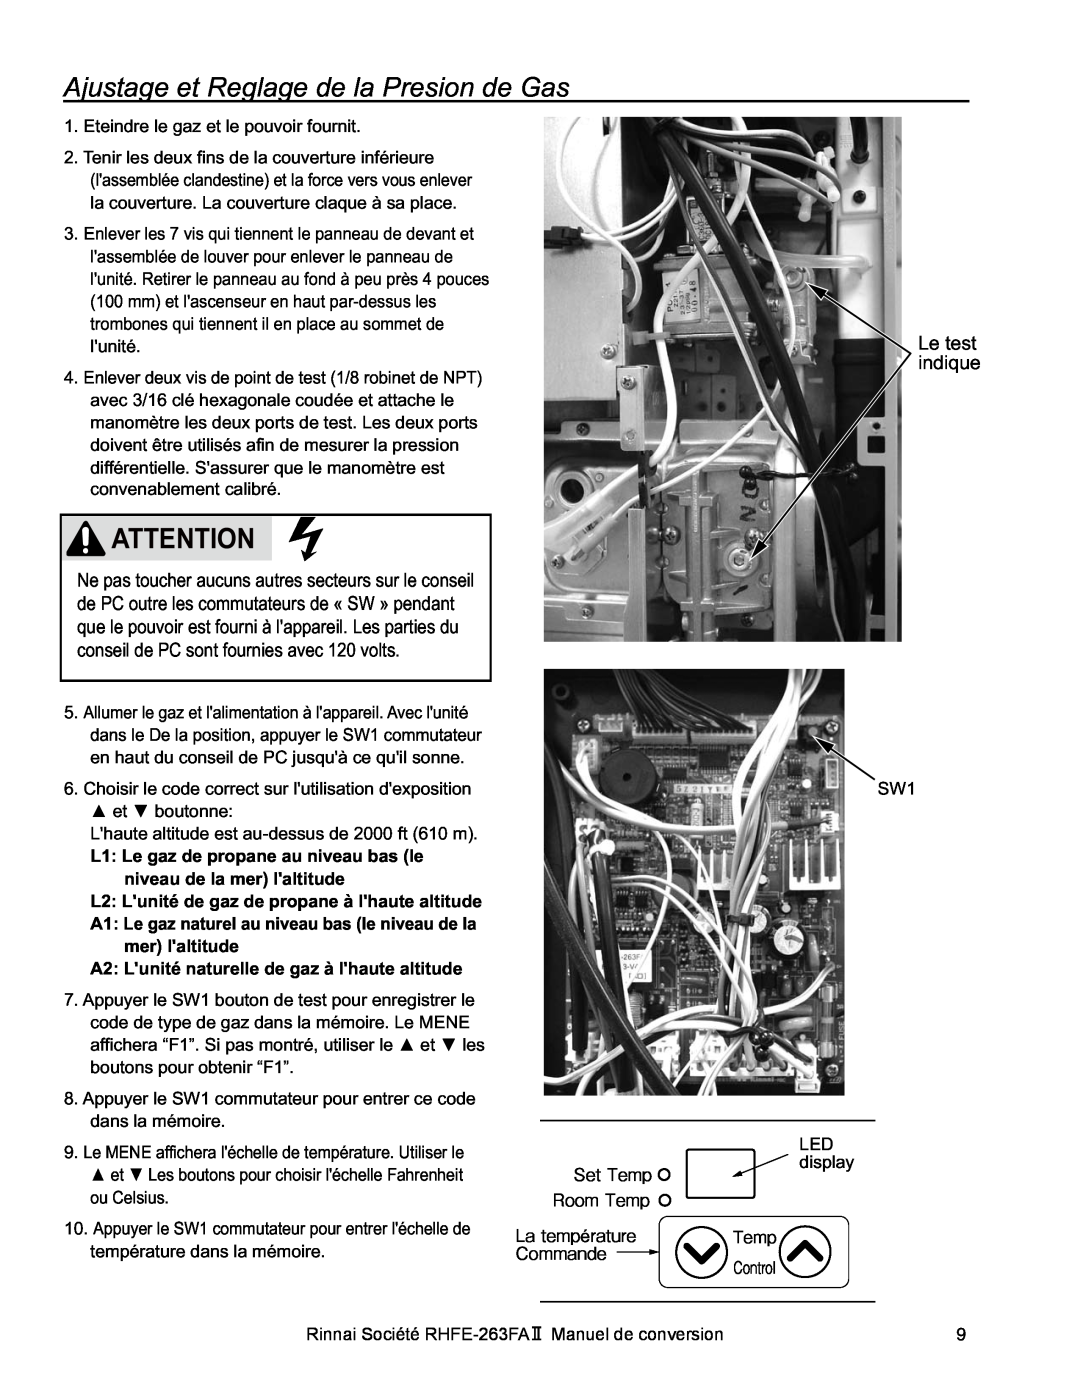 Rinnai RHFE-263FA II manual Ajustage et Reglage de la Presion de Gas, Le test indique 